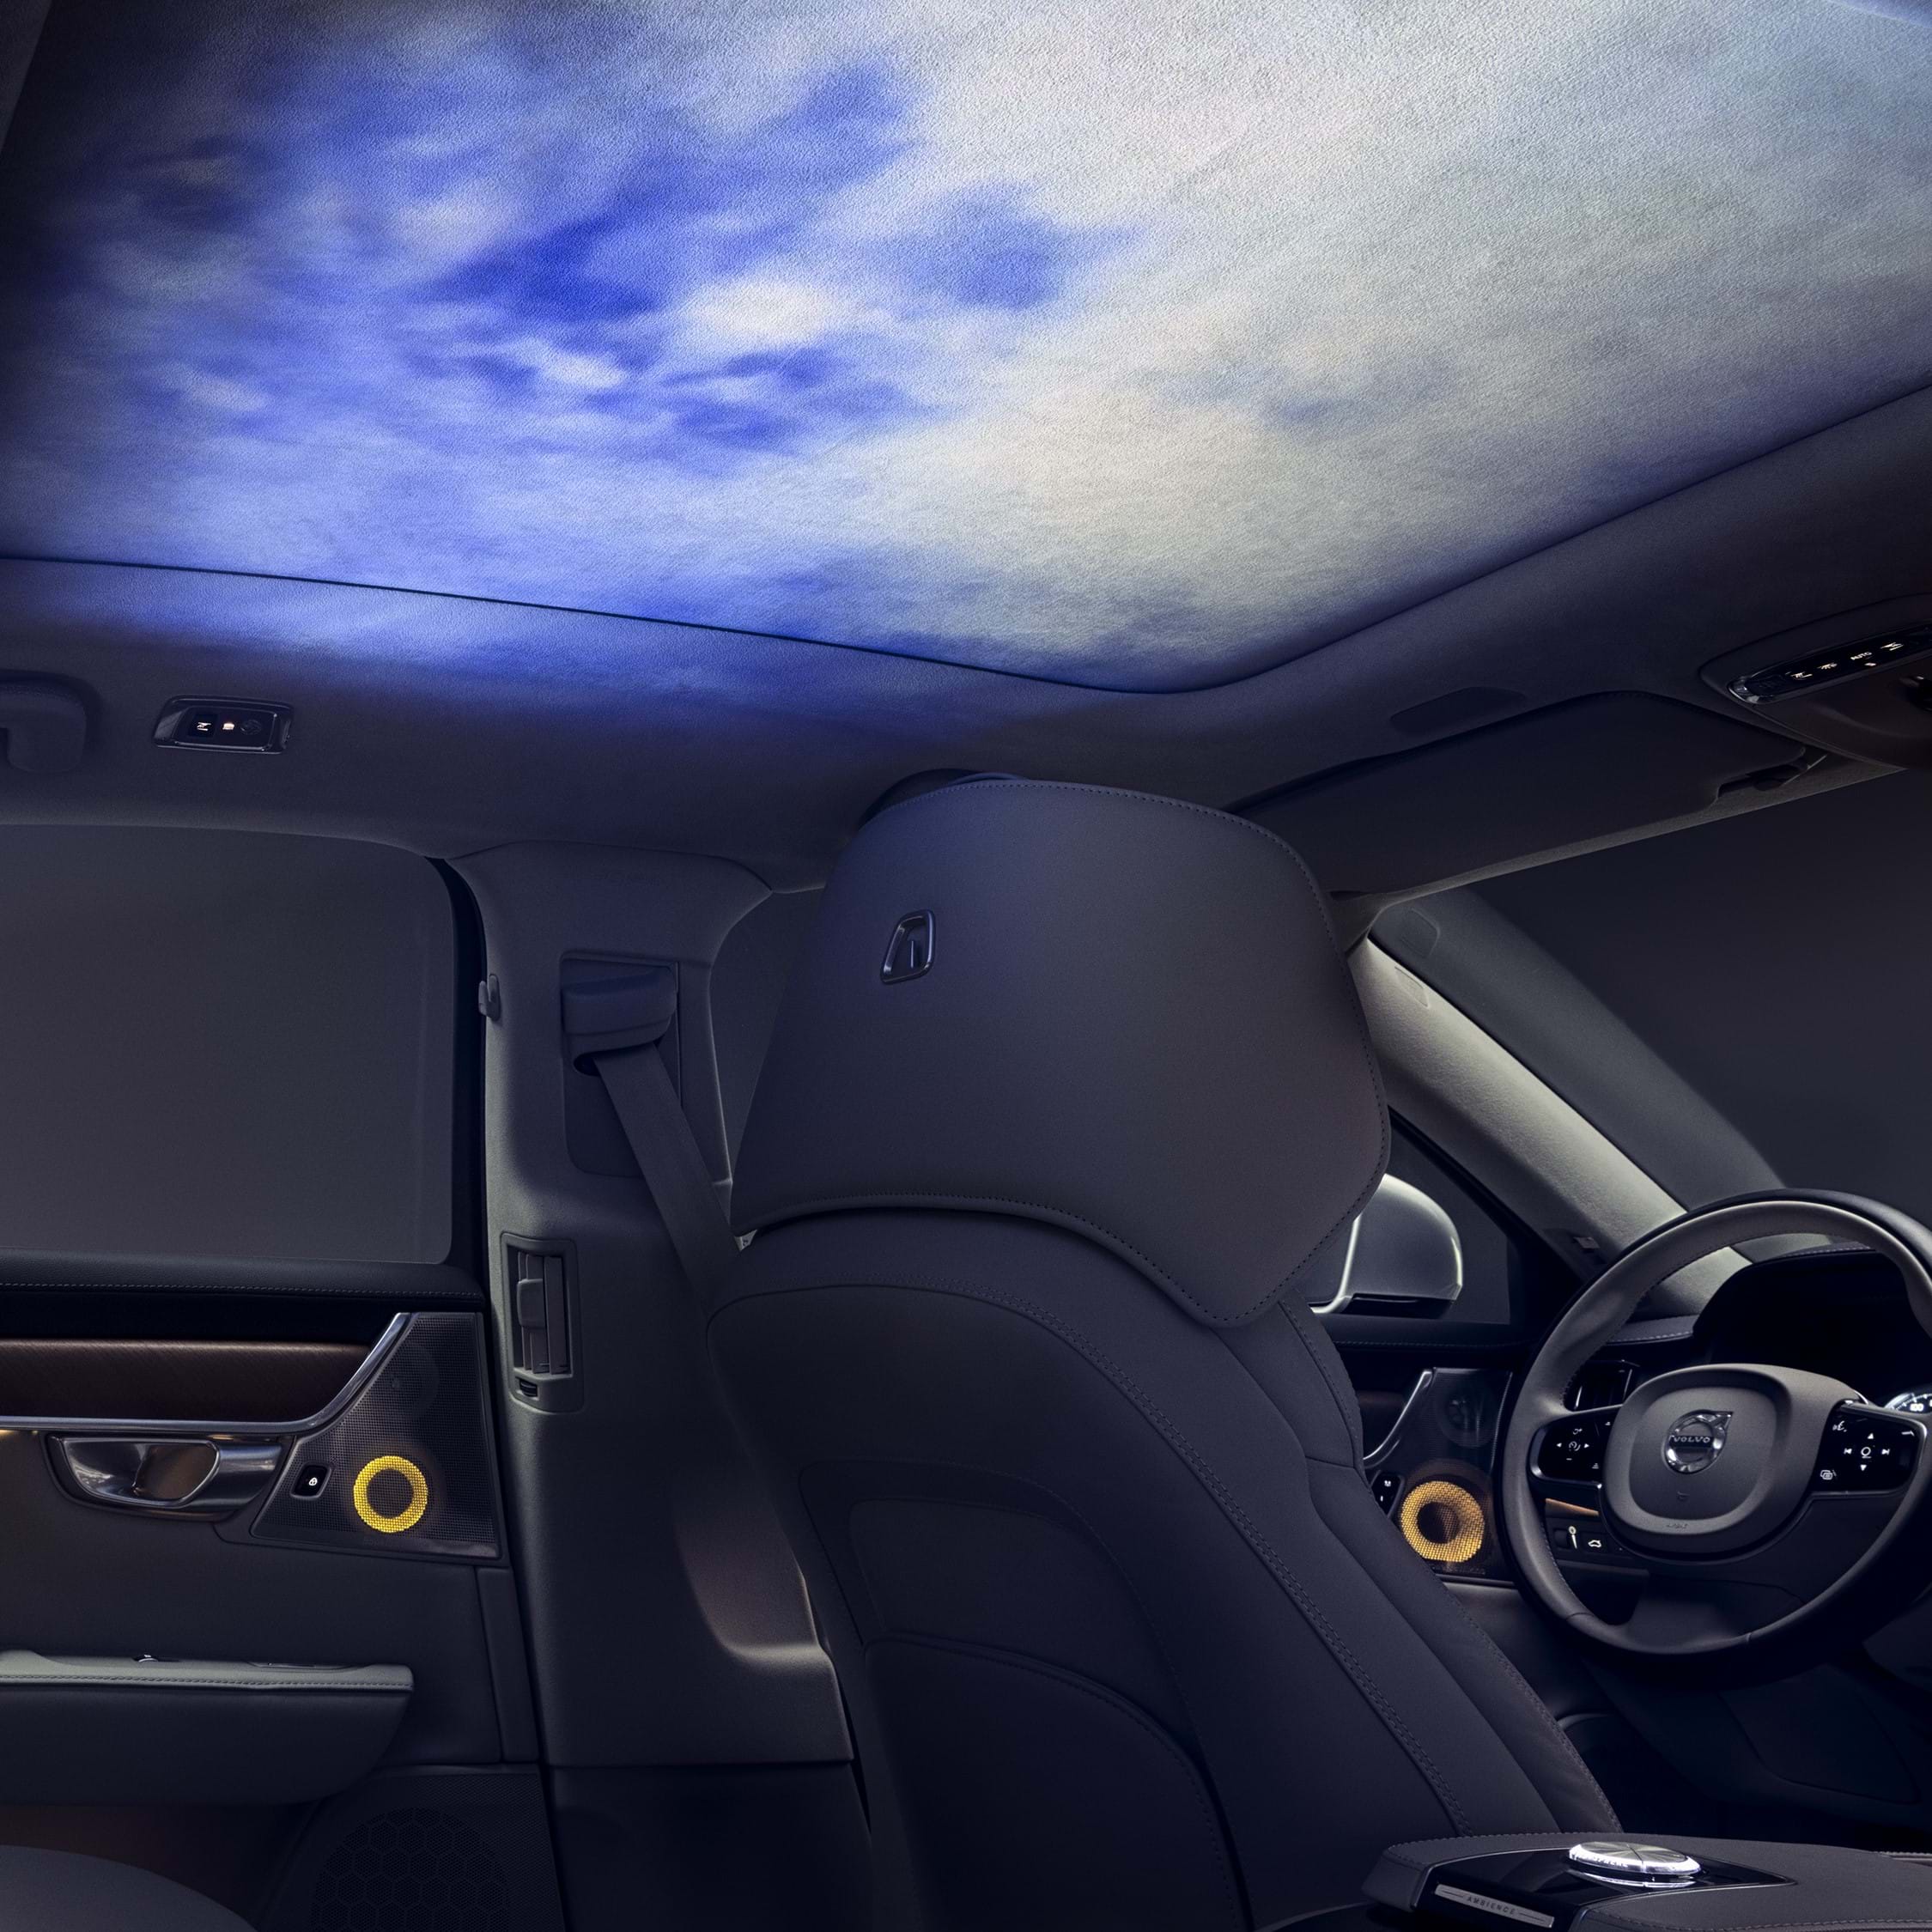 Innenraum eines Volvo mit in den Dachhimmel projizierter Ambience-Beleuchtung.